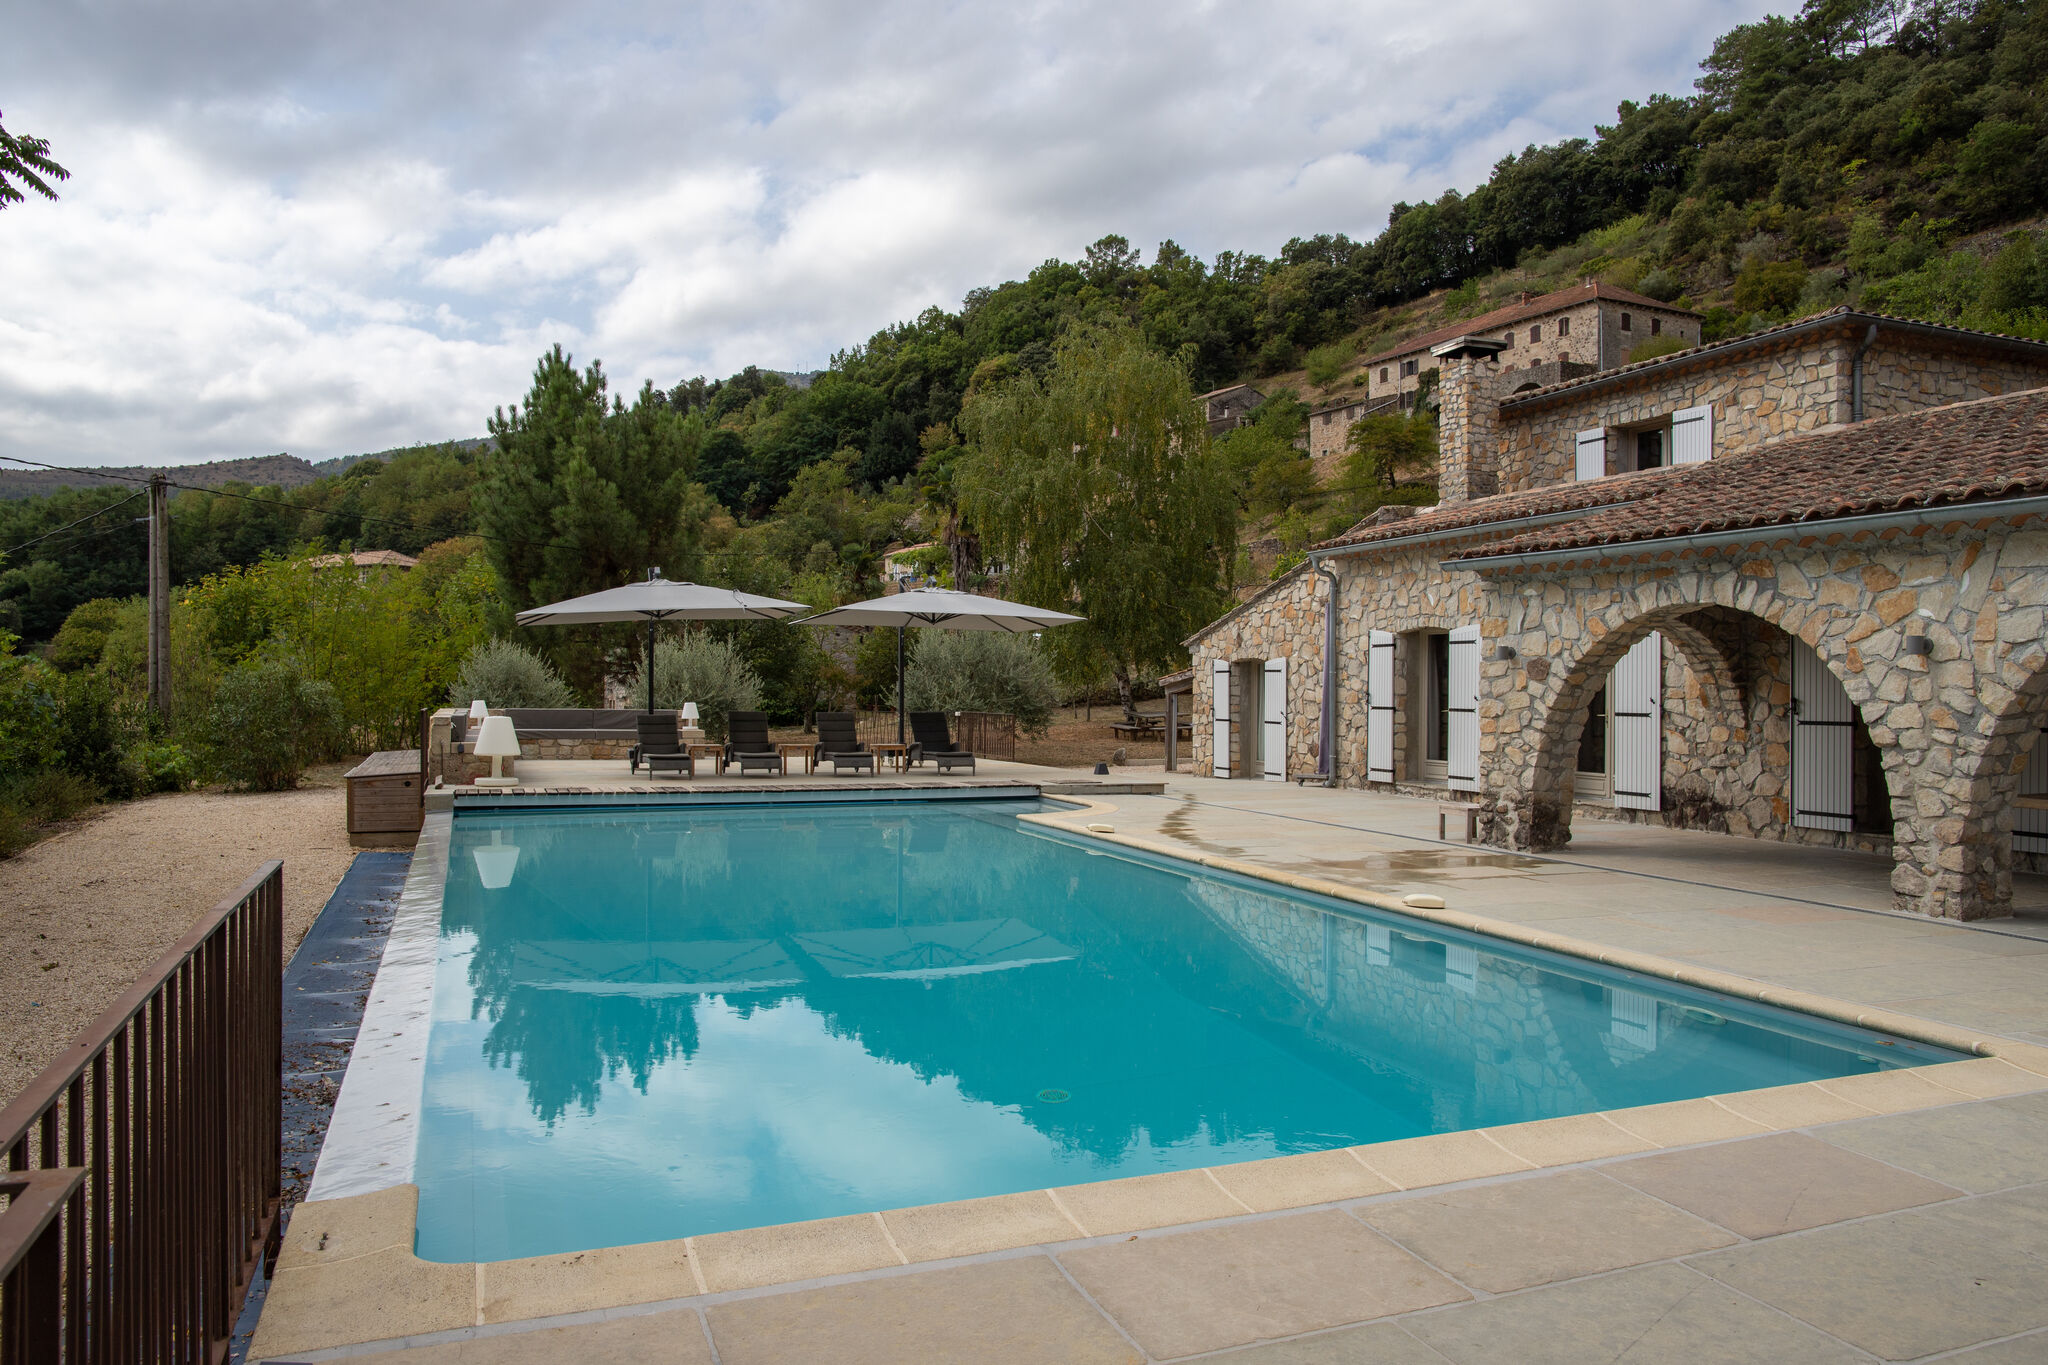 Mooie villa in het zuiden van de Ardèche, ideaal voor gezinnen met kinderen